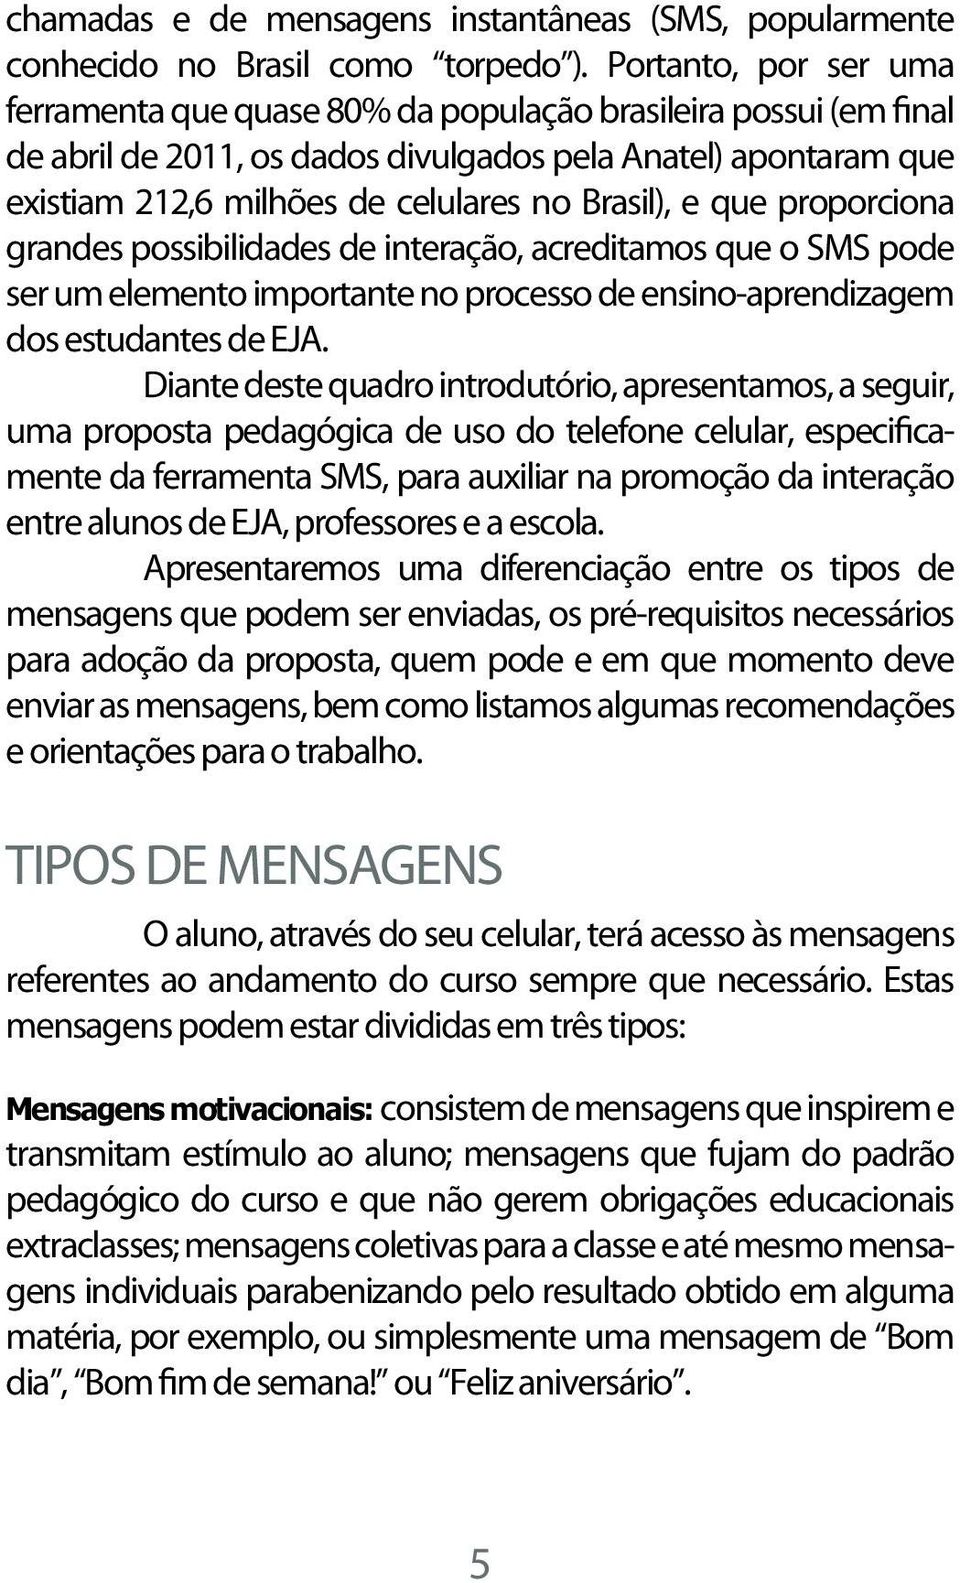 Brasil), e que proporciona grandes possibilidades de interação, acreditamos que o SMS pode ser um elemento importante no processo de ensino-aprendizagem dos estudantes de EJA.